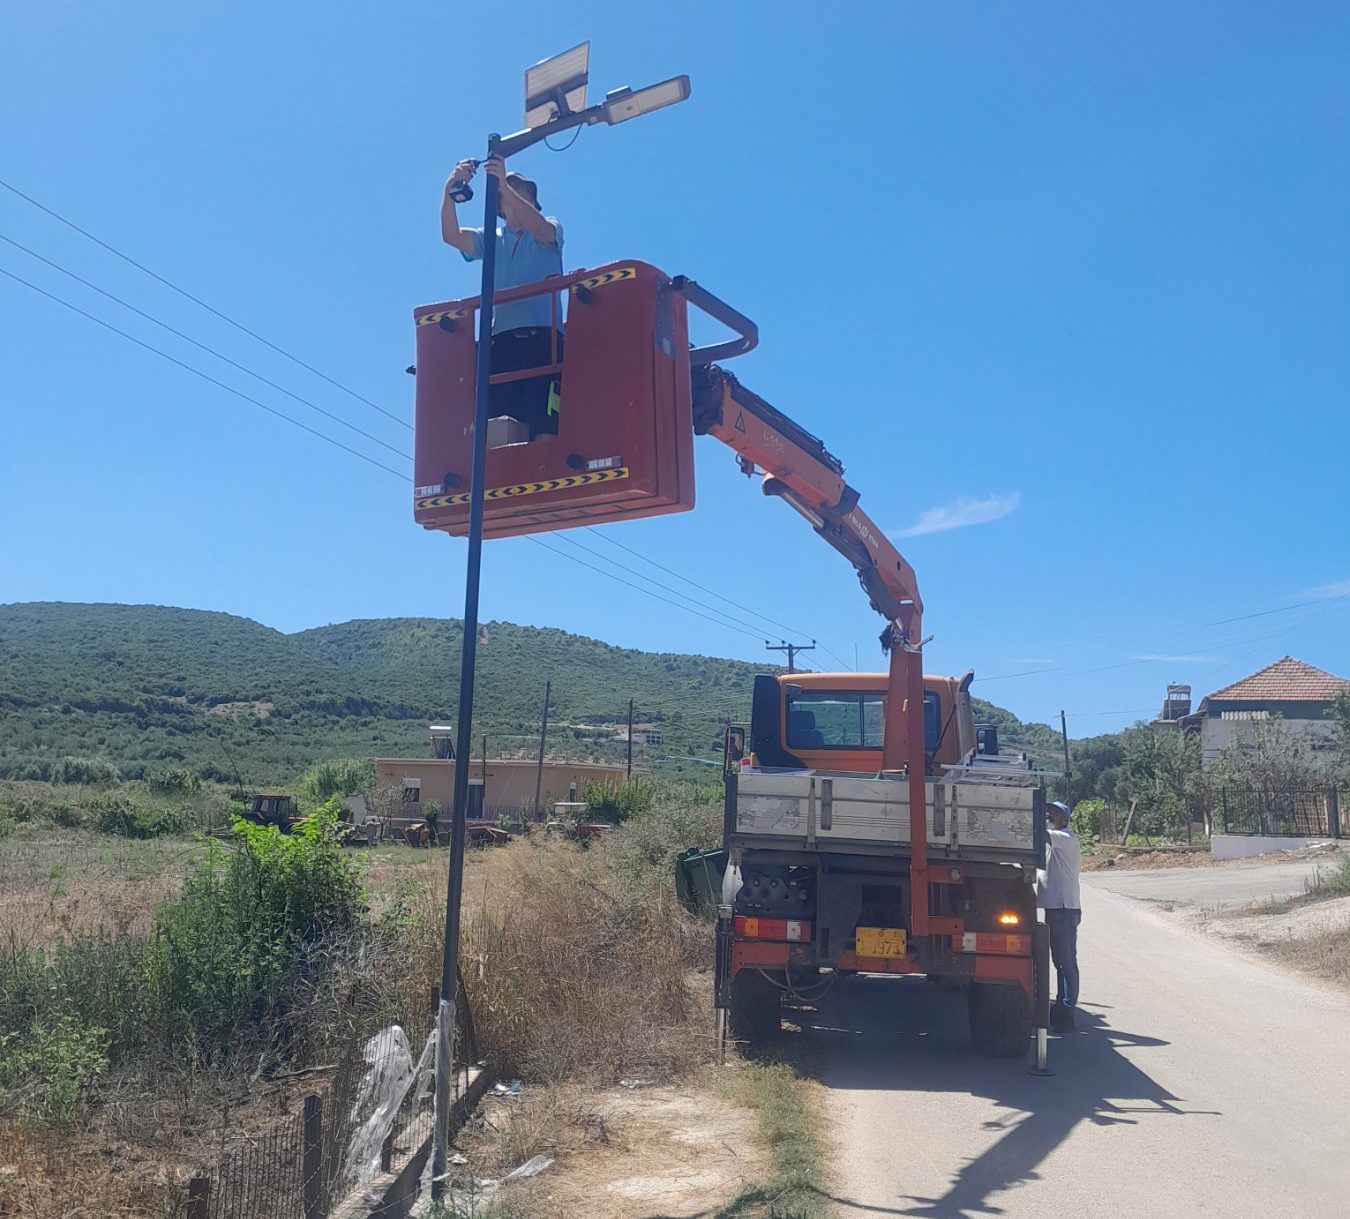 Με σύμμαχο τον ήλιο ο Δήμος Πάργας λύνει το πρόβλημα επέκτασης του δικτύου οδοφωτισμού